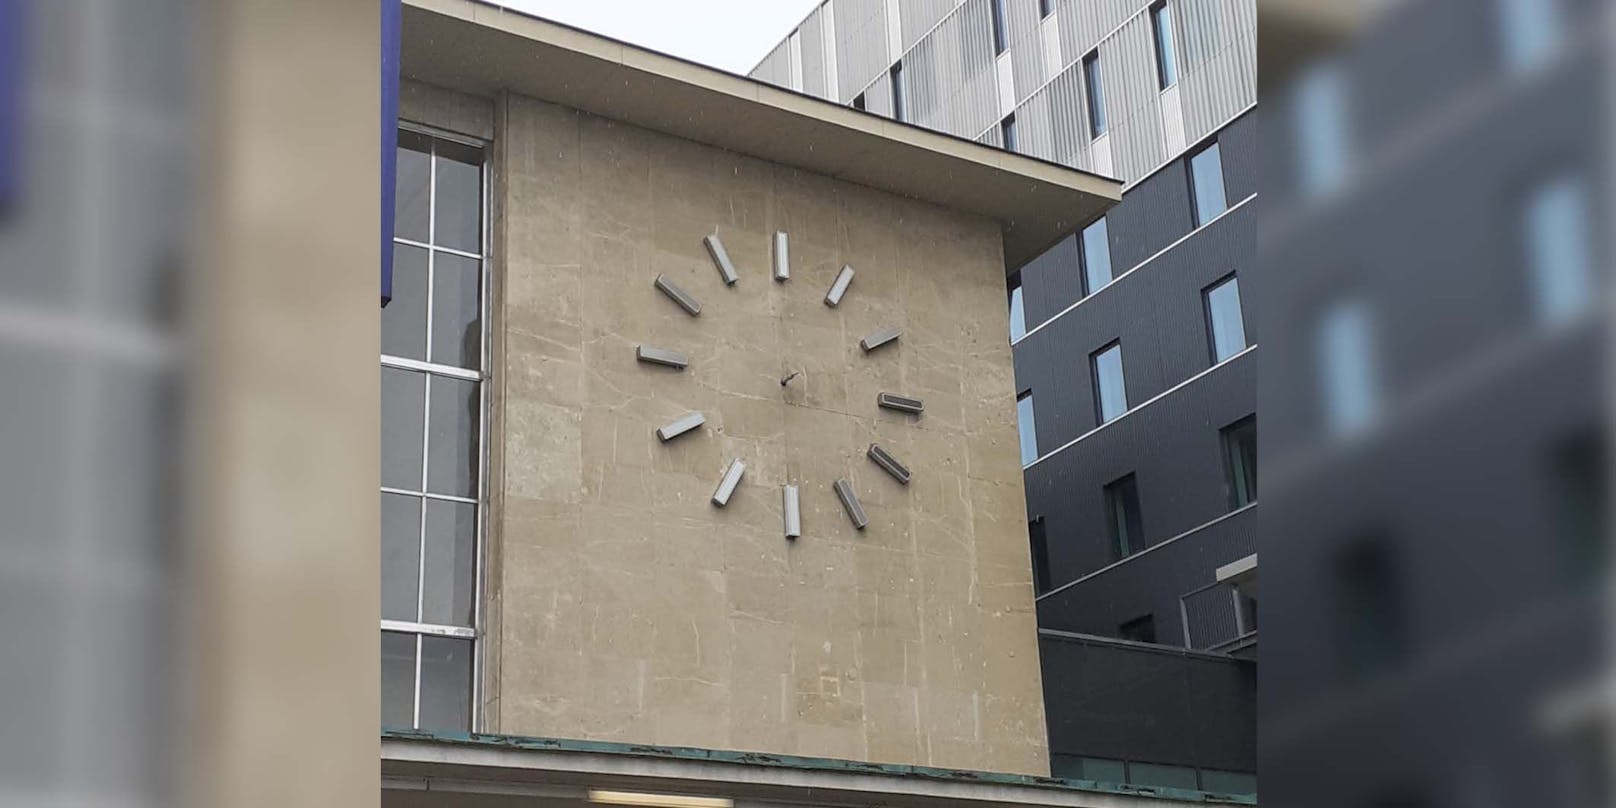 Lesereporterin Conny fällt auf, dass die Zeiger der Uhr am Westbahnhof schon seit Monaten fehlen.